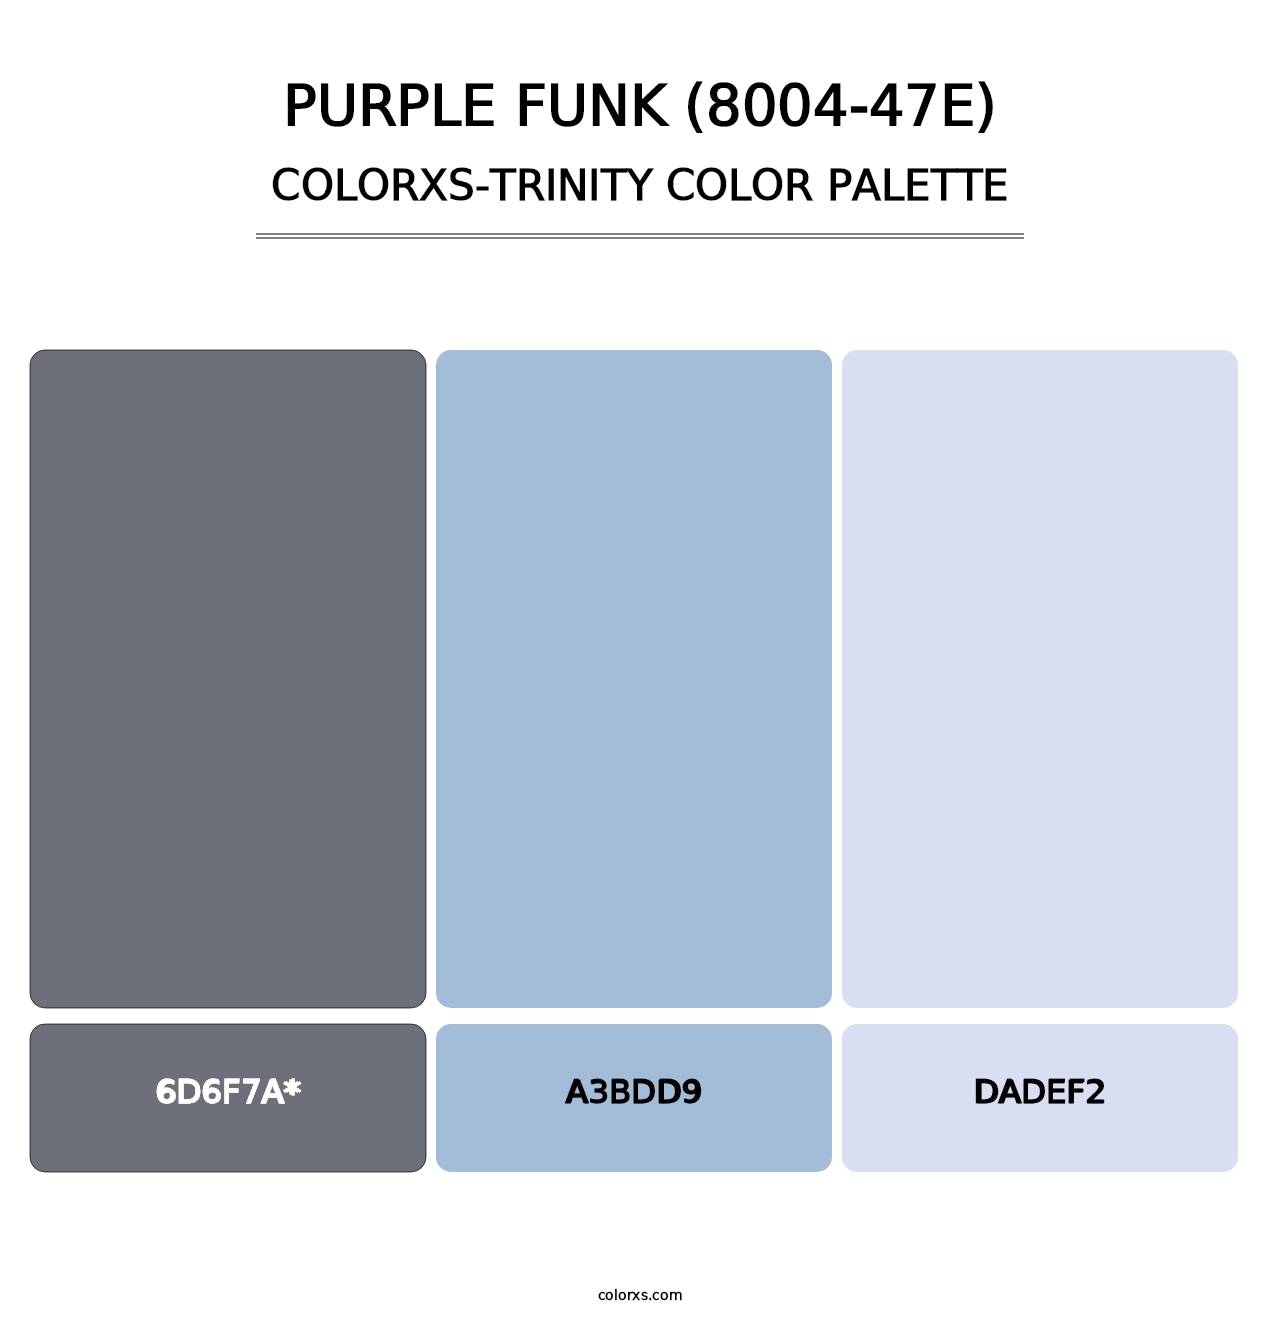 Purple Funk (8004-47E) - Colorxs Trinity Palette